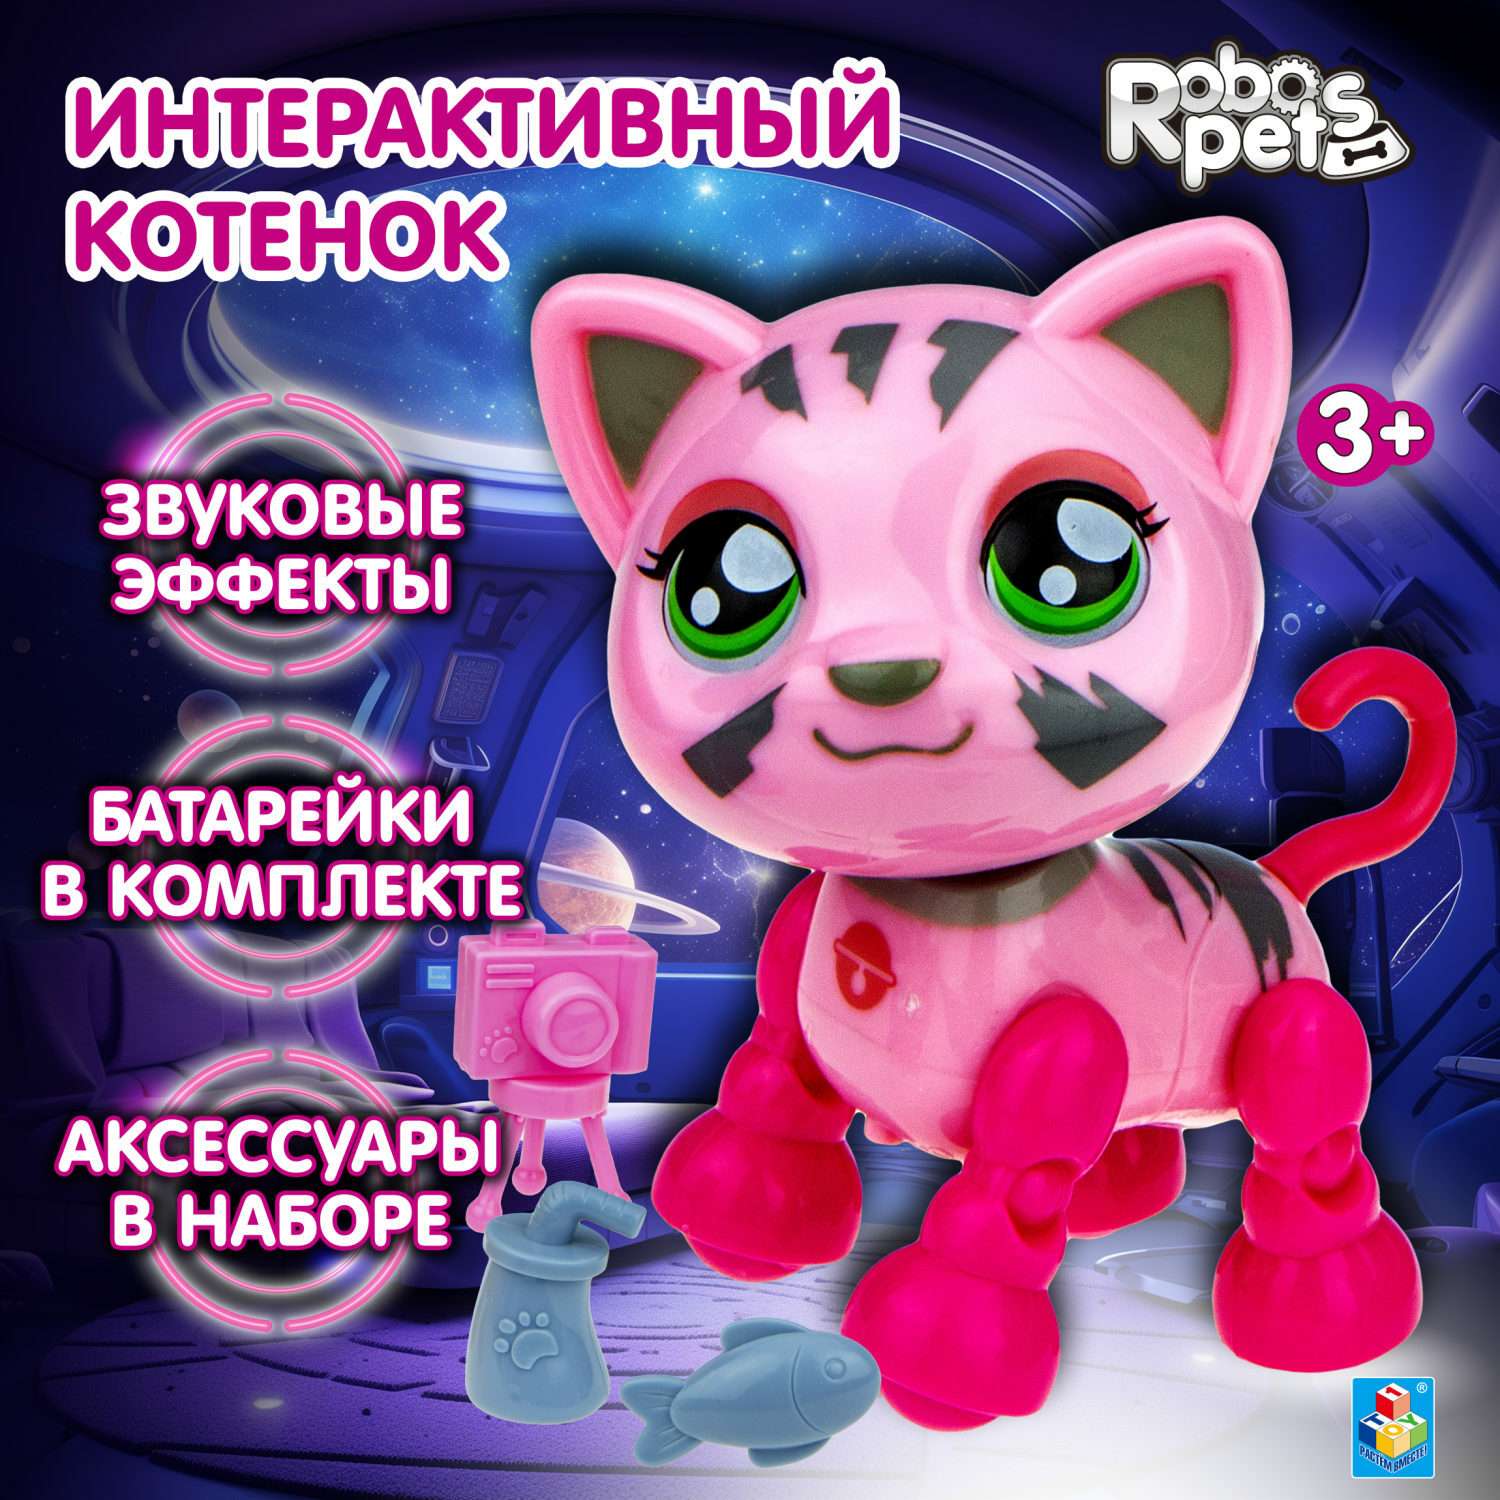 Интерактивная игрушка Robo Pets Милашка котенок розовый - фото 1